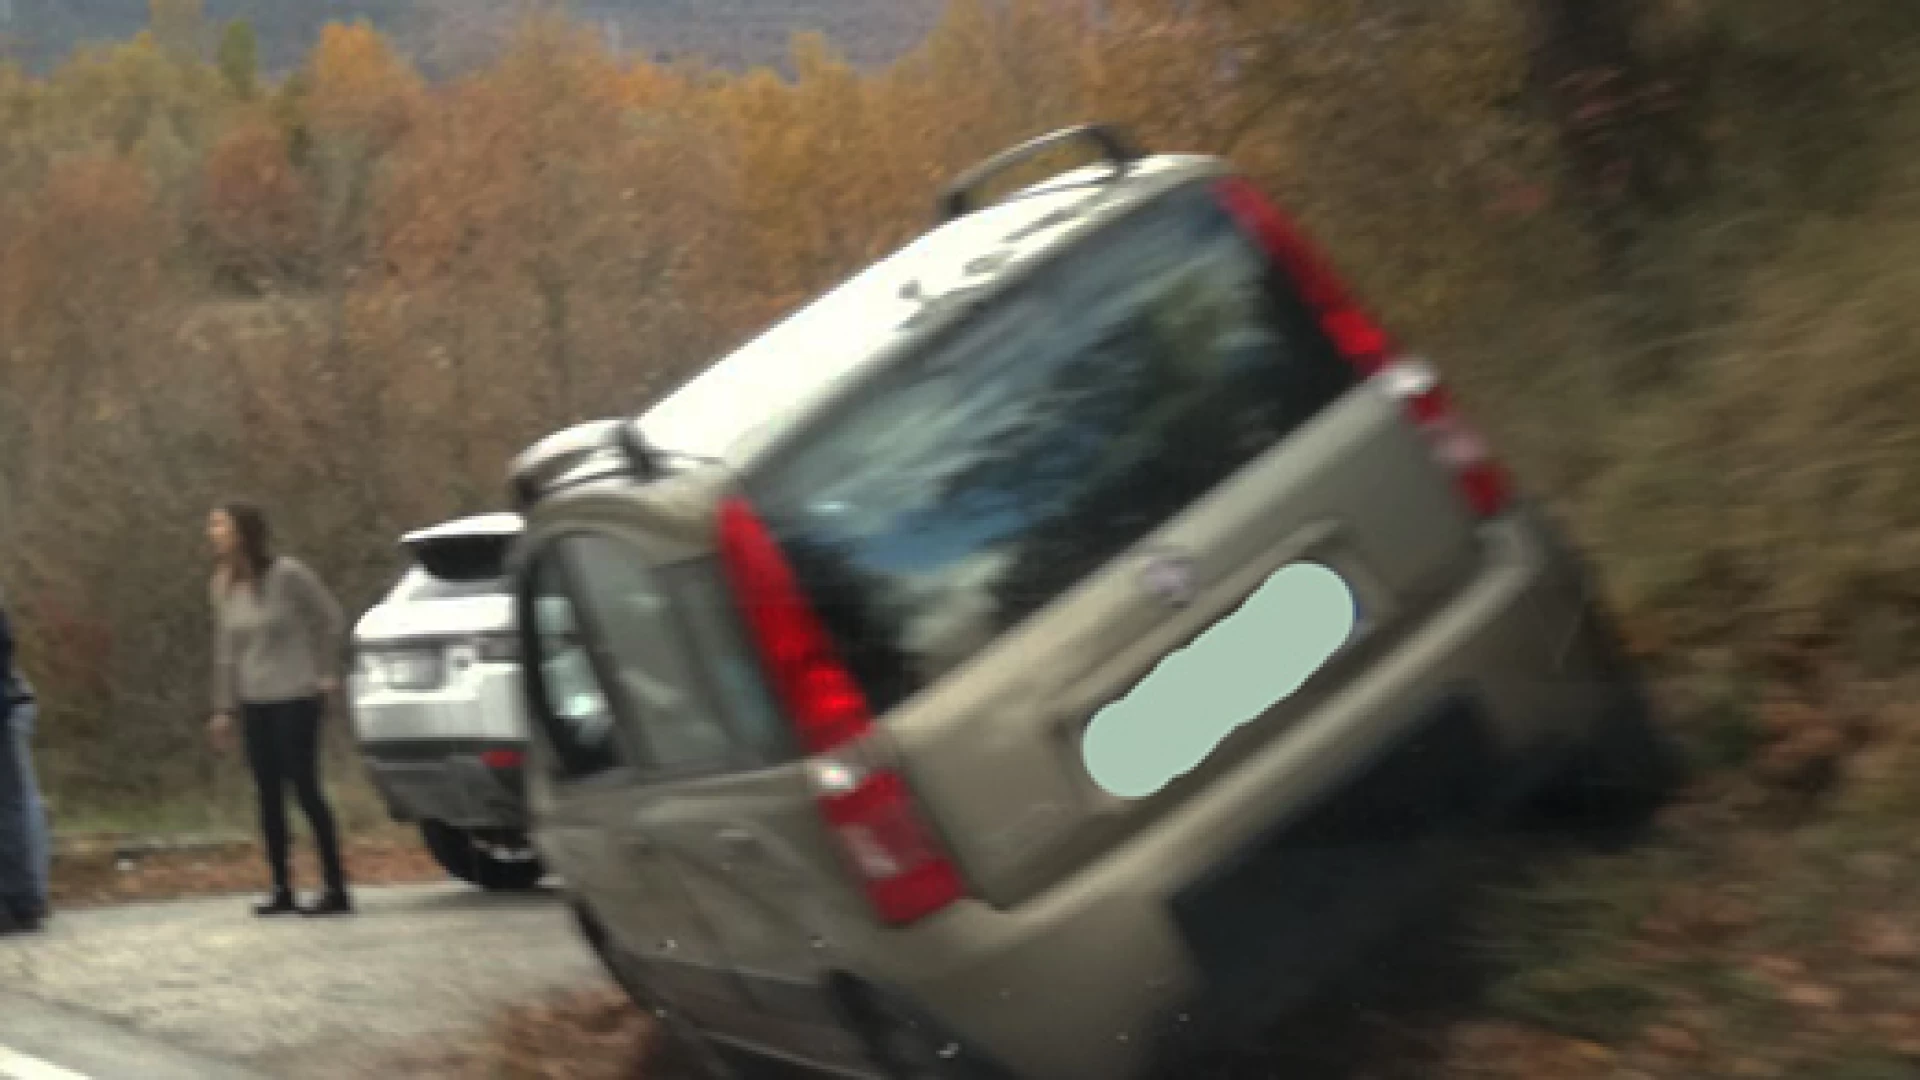 Montaquila: pauroso incidente sulla statale 158 “Valle del Volturno”. Utilitaria esce fuori strada. Nessun ferito ma urto violento.